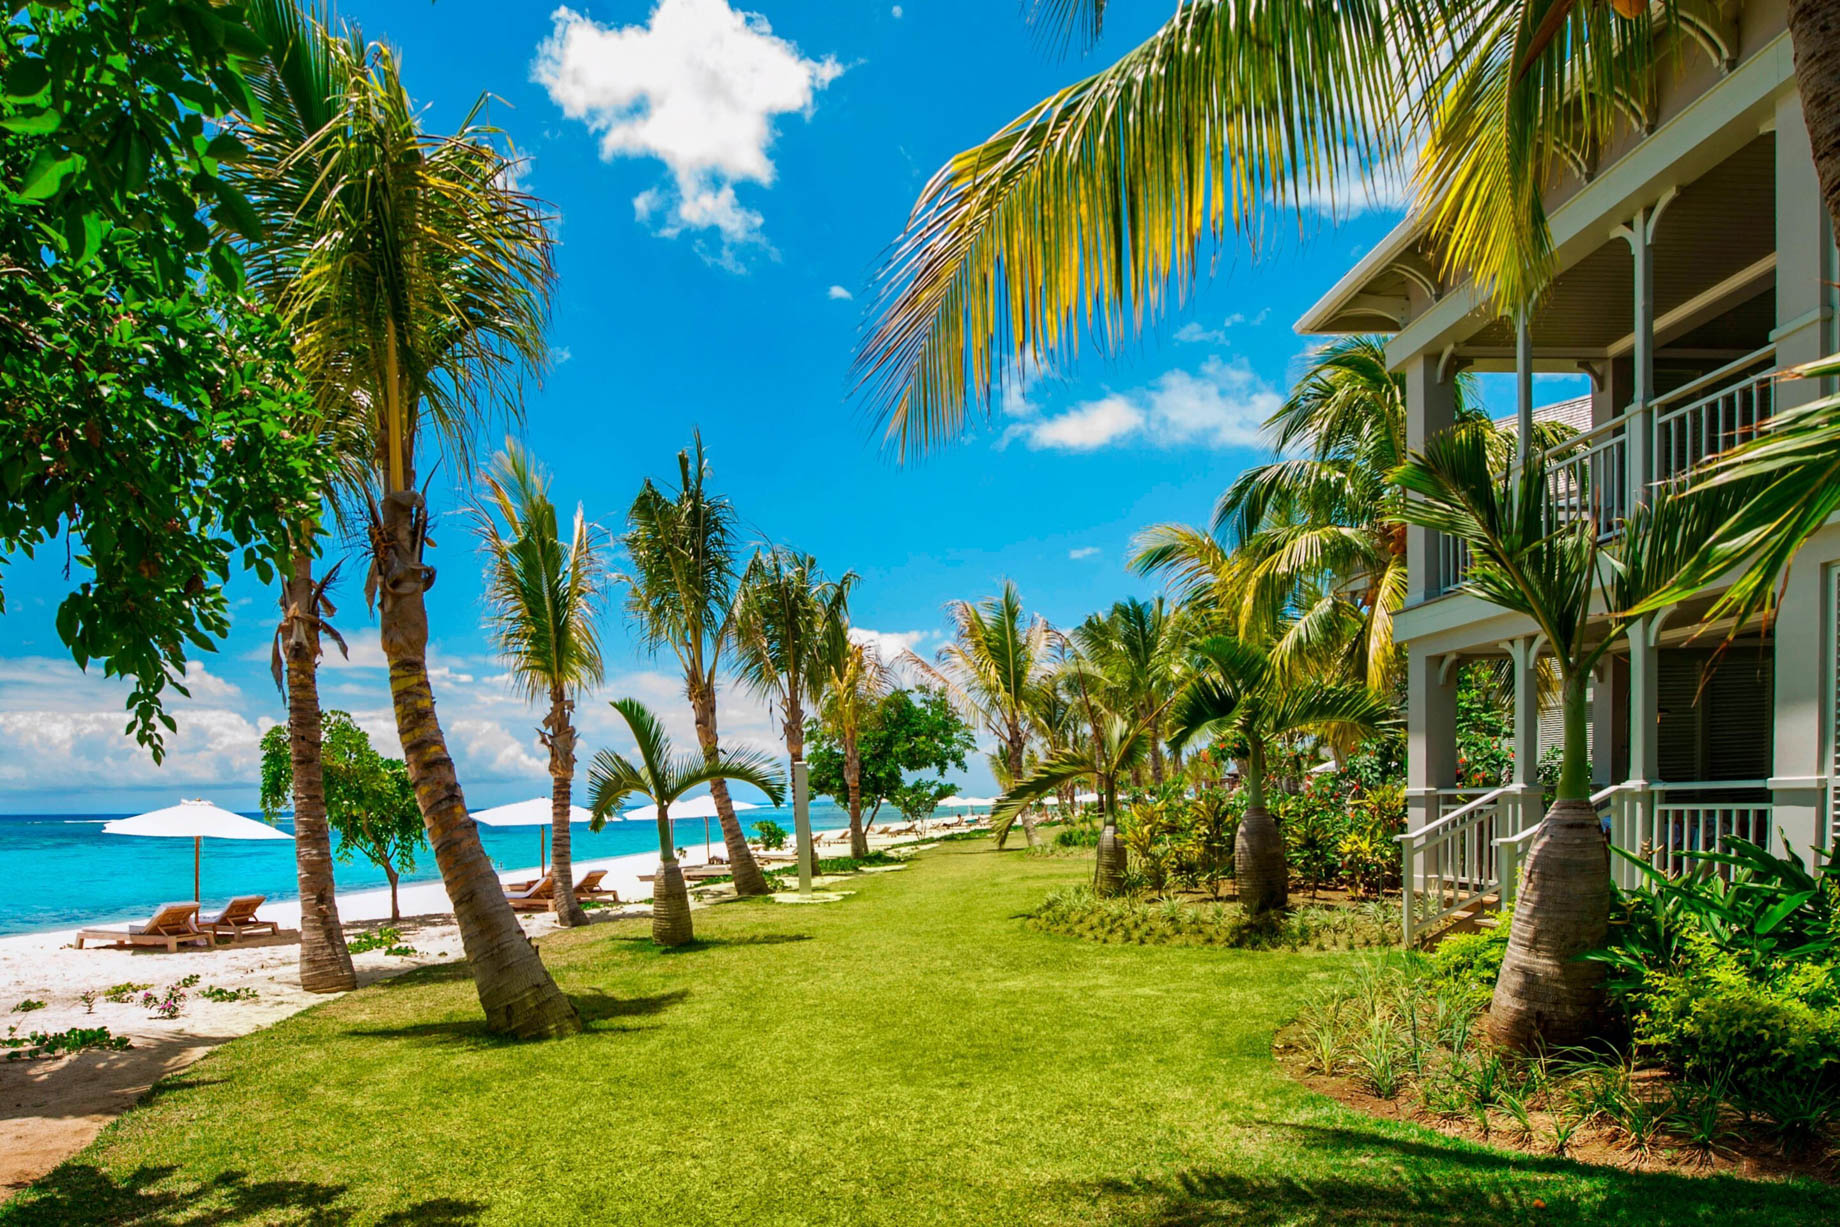 JW Marriott Mauritius Resort – Mauritius – Exterior Oceanview Suites